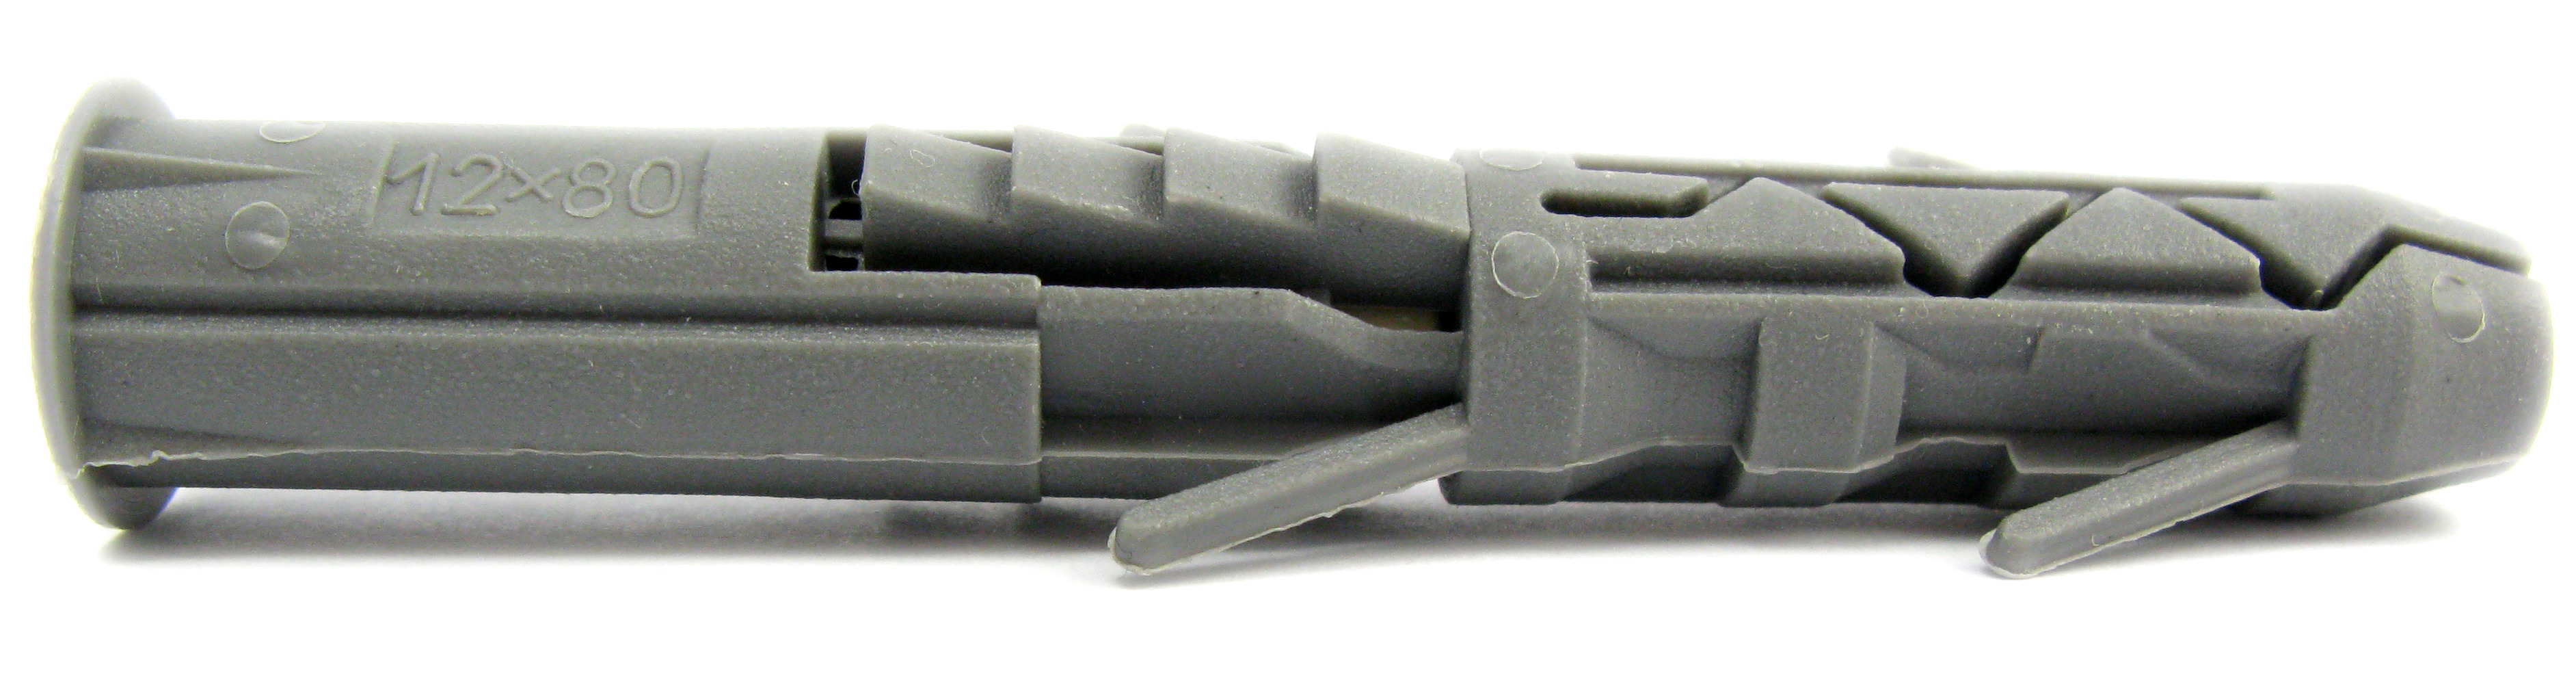 Дюбель універсальний полипропилен, з бортиком. Розмір 12х80 під шуруп Ø 8,0-9,0 (уп 100 шт) 